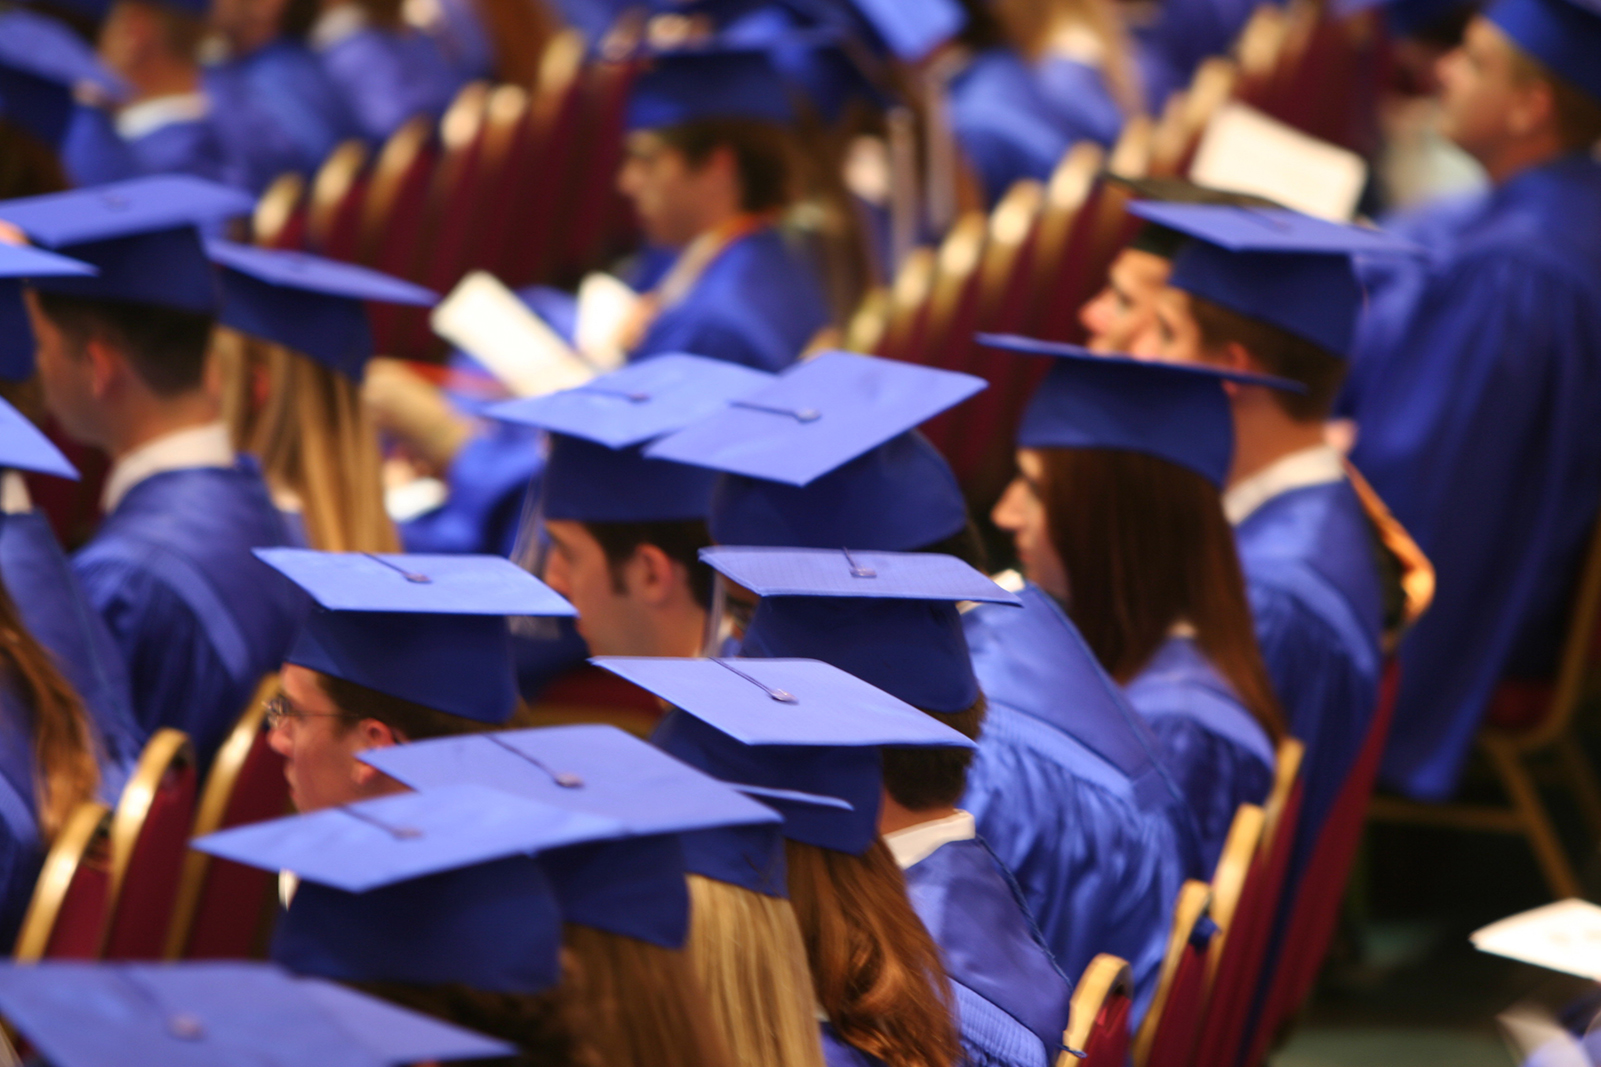 Centros educativos privados garantizan dos acompañantes por alumno en graduaciones